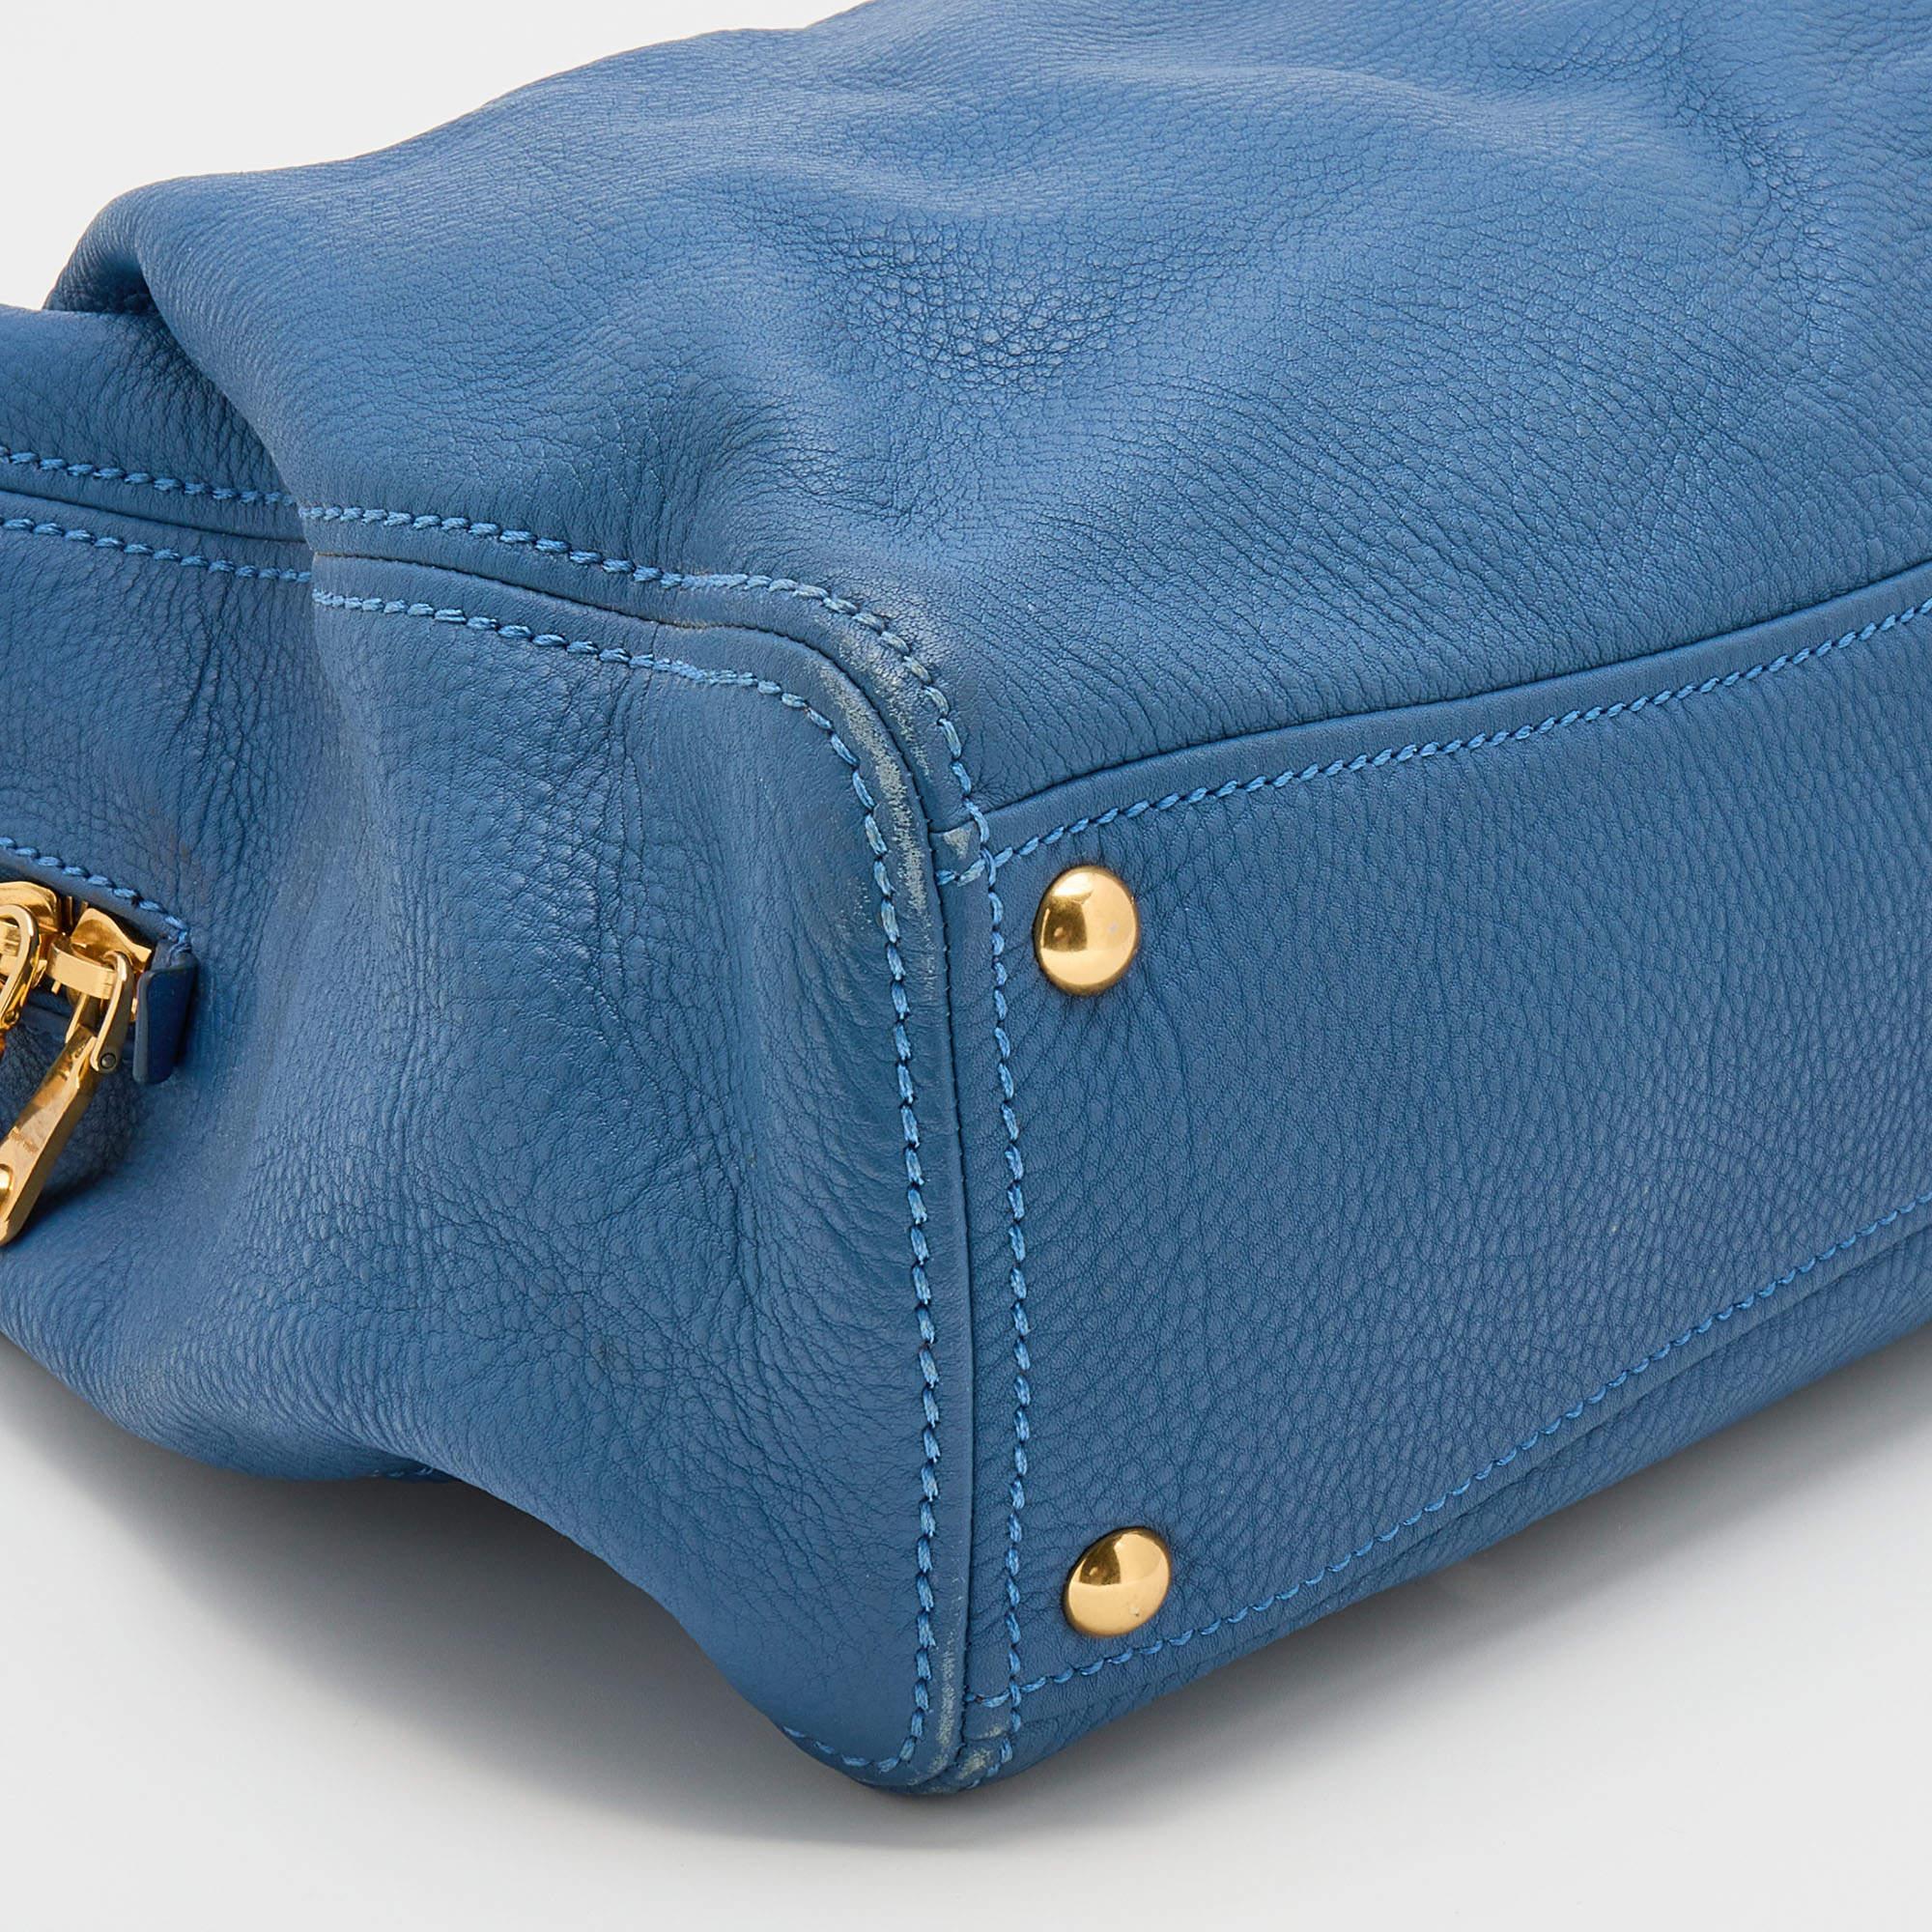 Miu Miu Blue Leather Middle Zip Tote 2